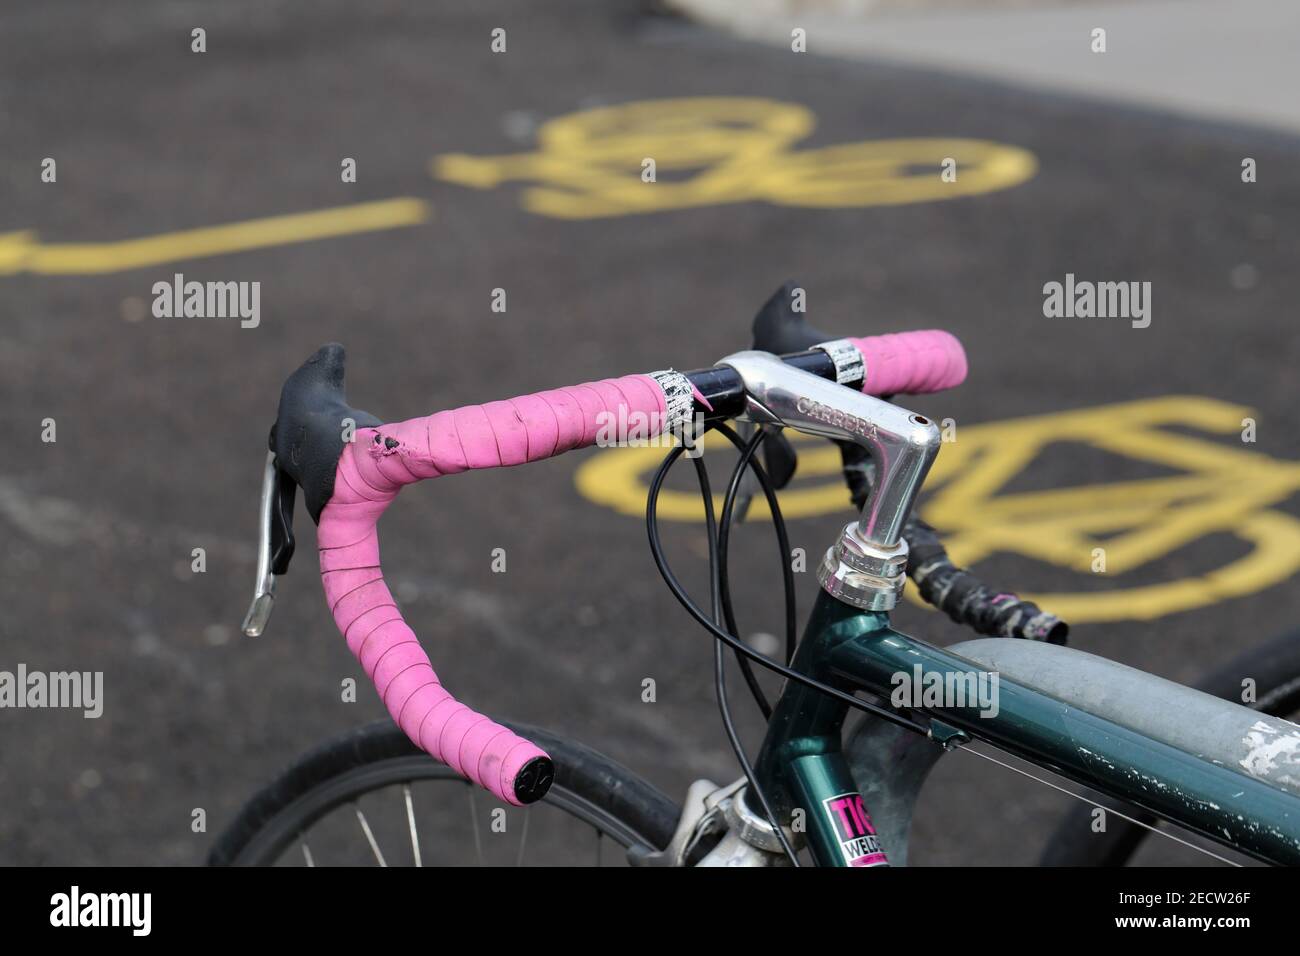 Gros plan des détails d'une bicyclette garée située à Zurich, Suisse, mars 2020. Image couleur avec tons gris, argent, rose, vert et jaune. Banque D'Images